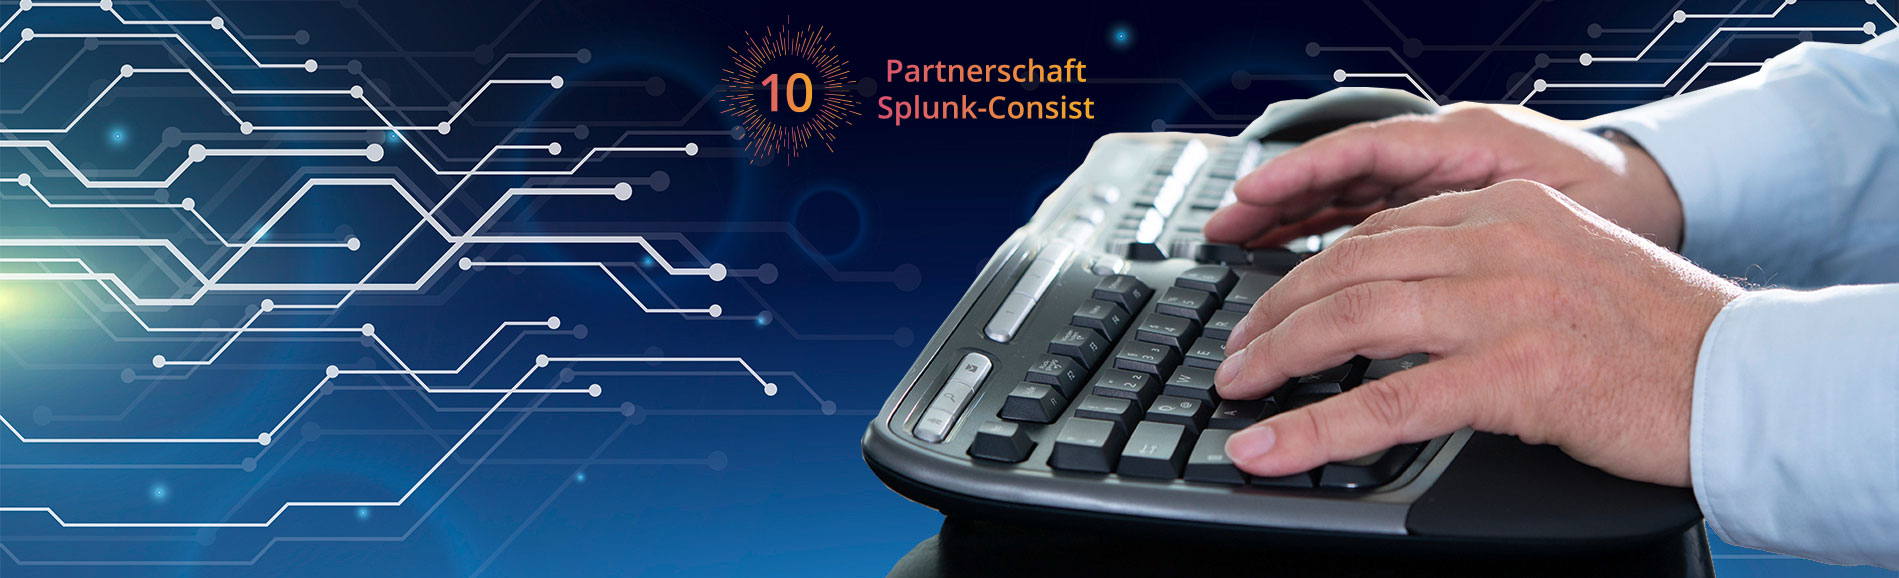 Splunk und Consist feiern 10 Jahre Partnerschaft.